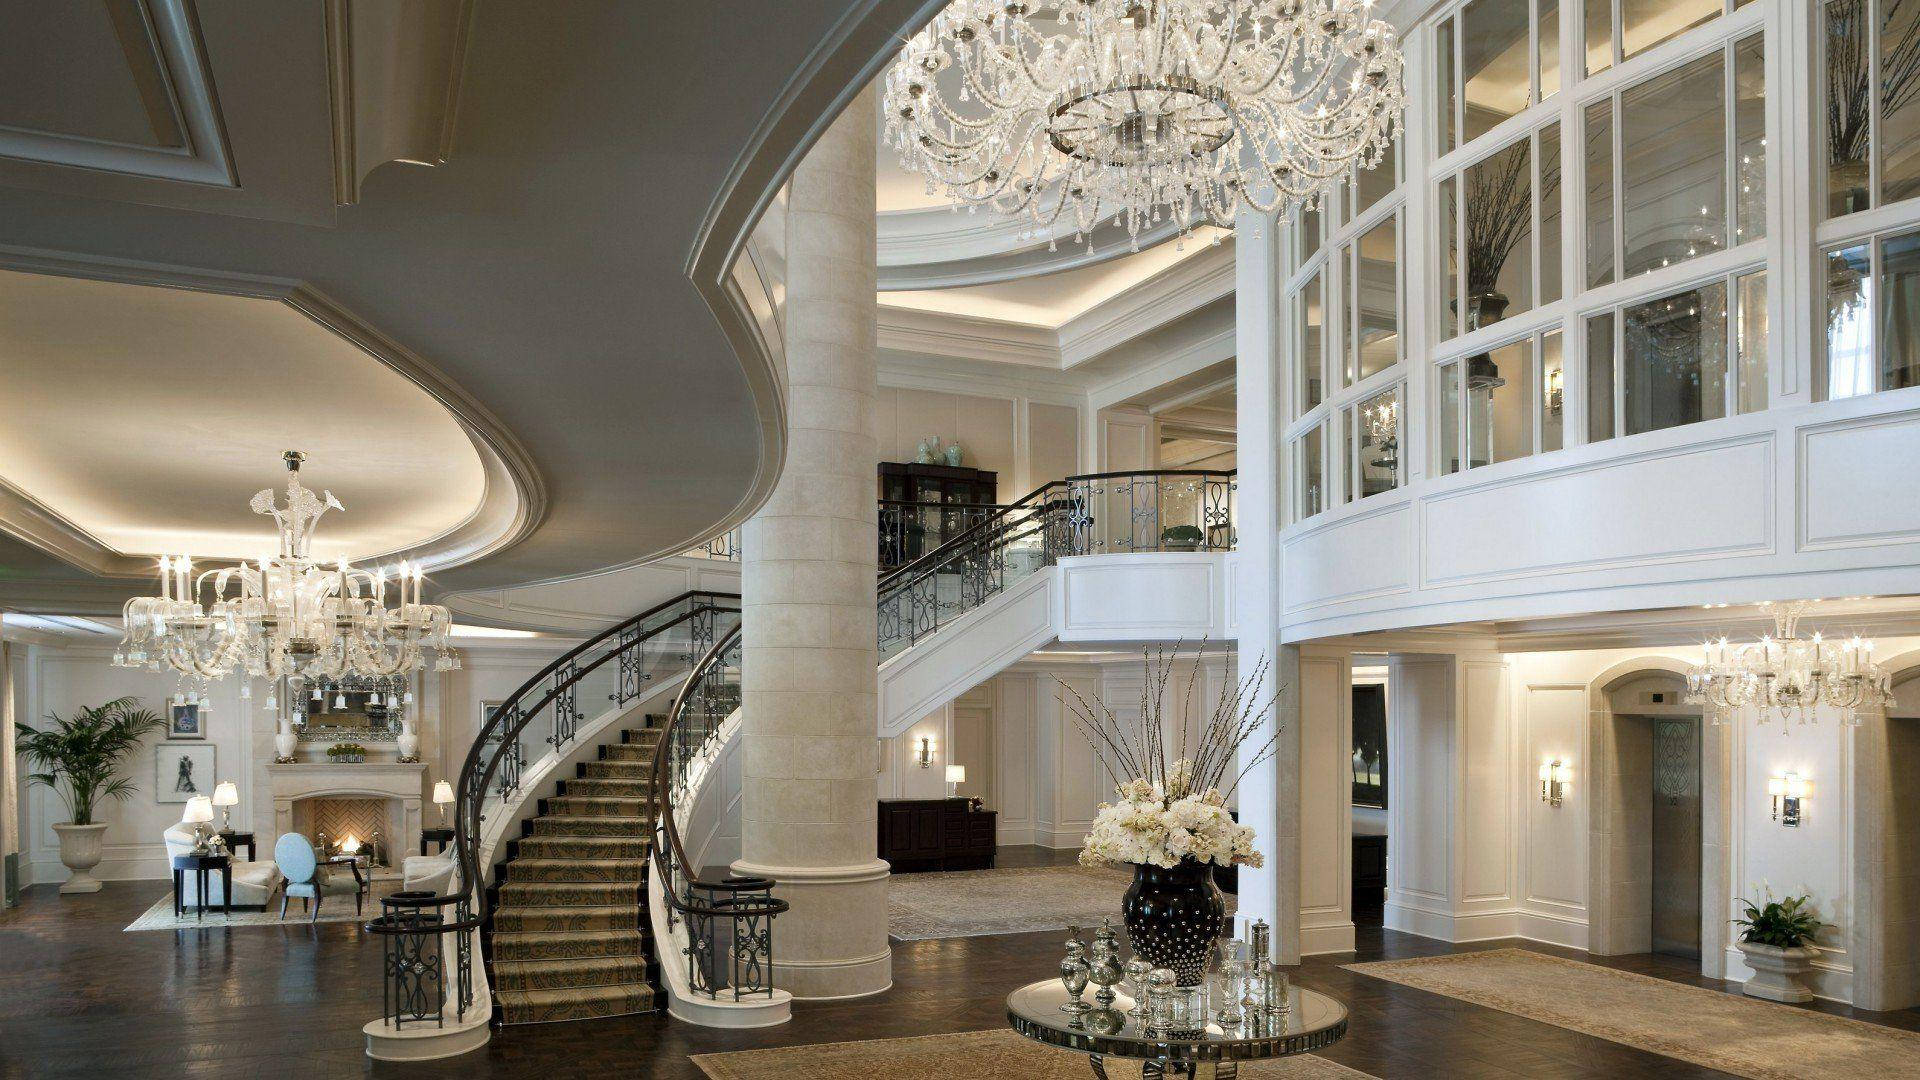 The St. Regis Atlanta Hotel Interior Design Picture